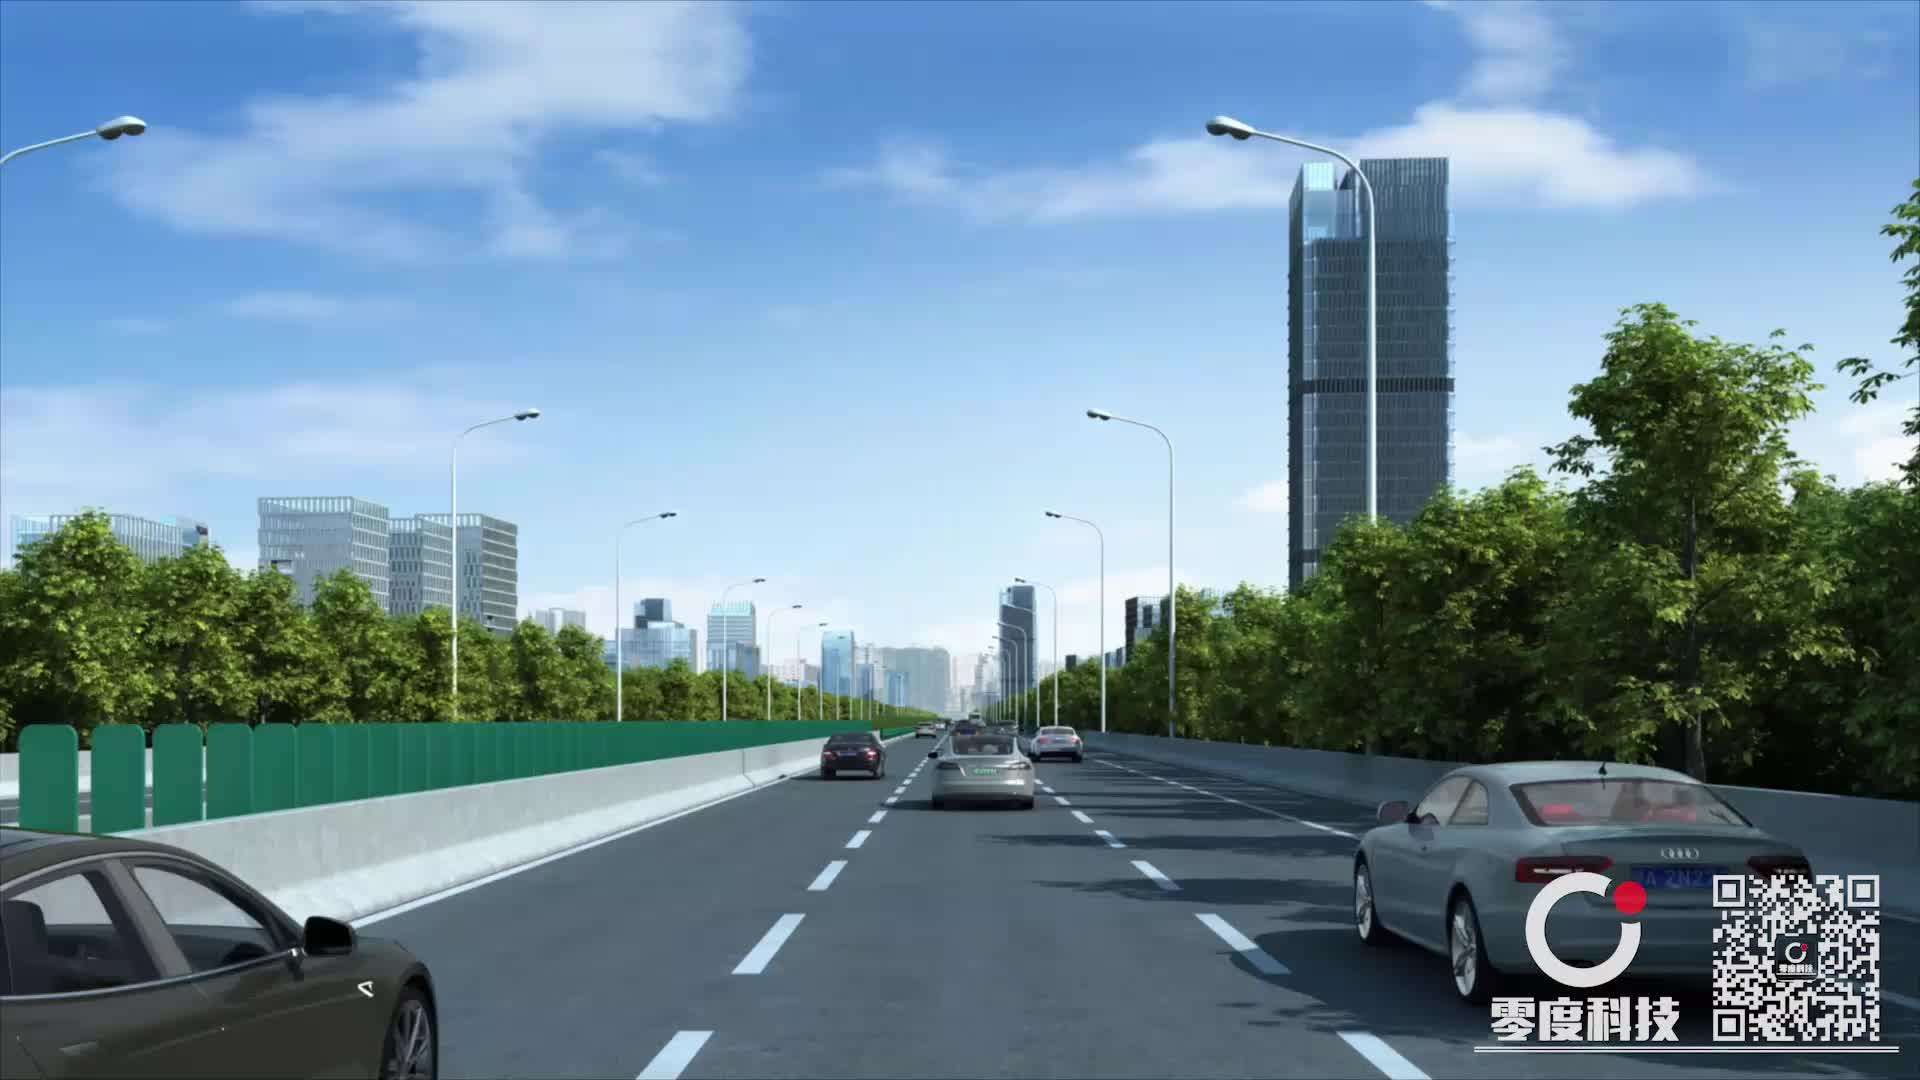 市政道路动画  道路施工 施工动画 演示动画 工艺动画 道路动画 高速公路 灯光